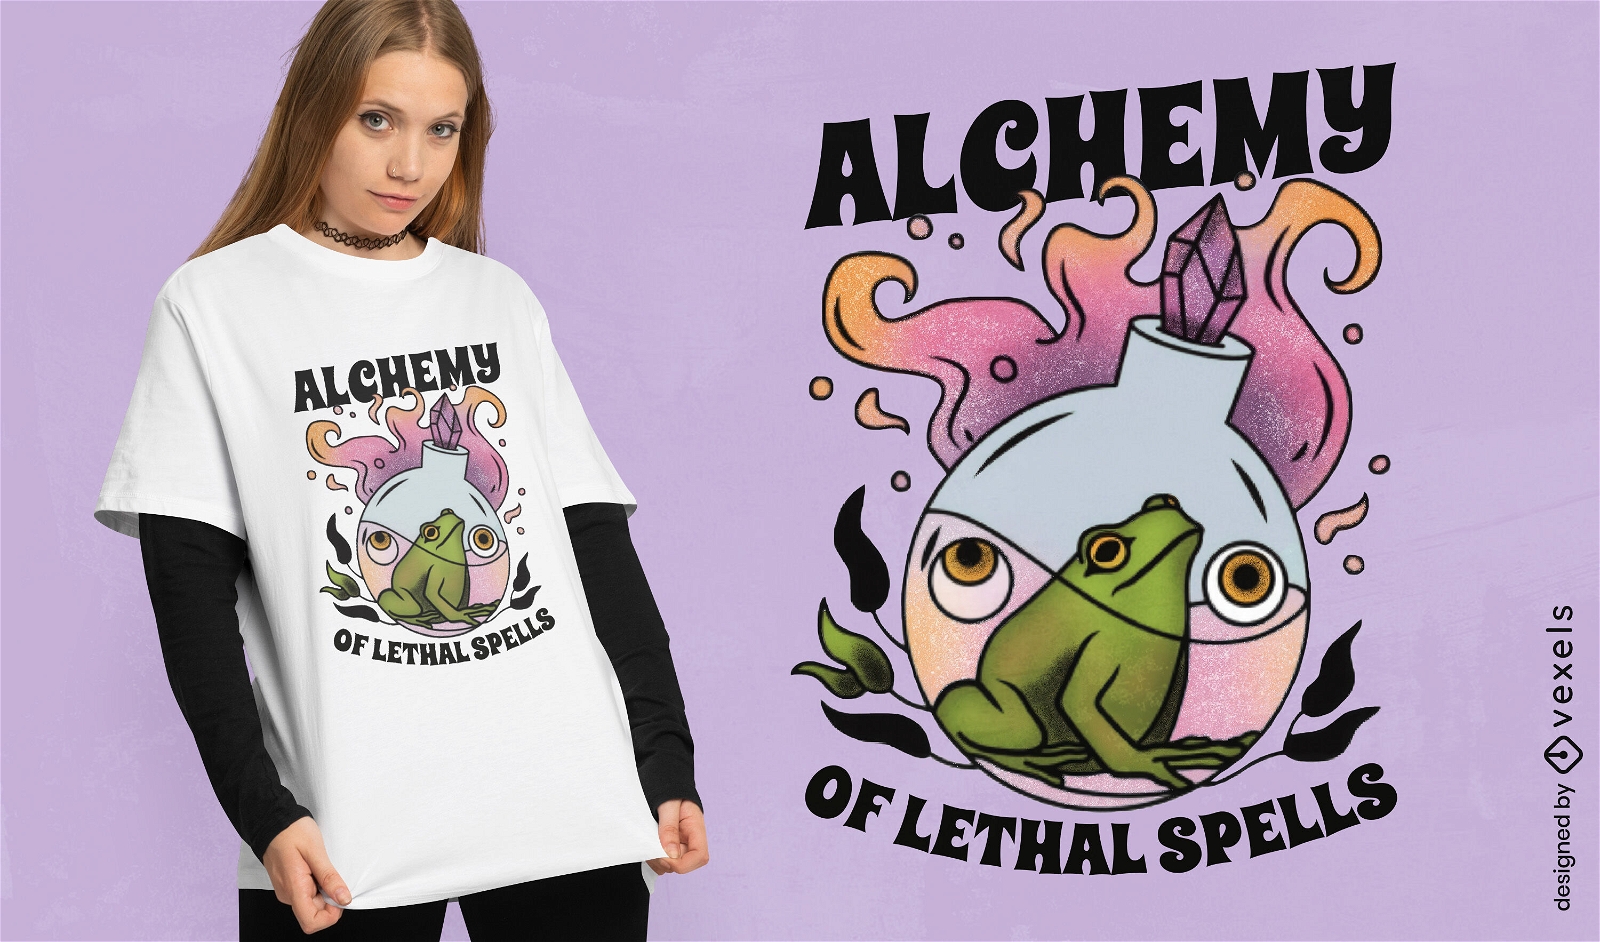 Alchemical frog t-shirt design